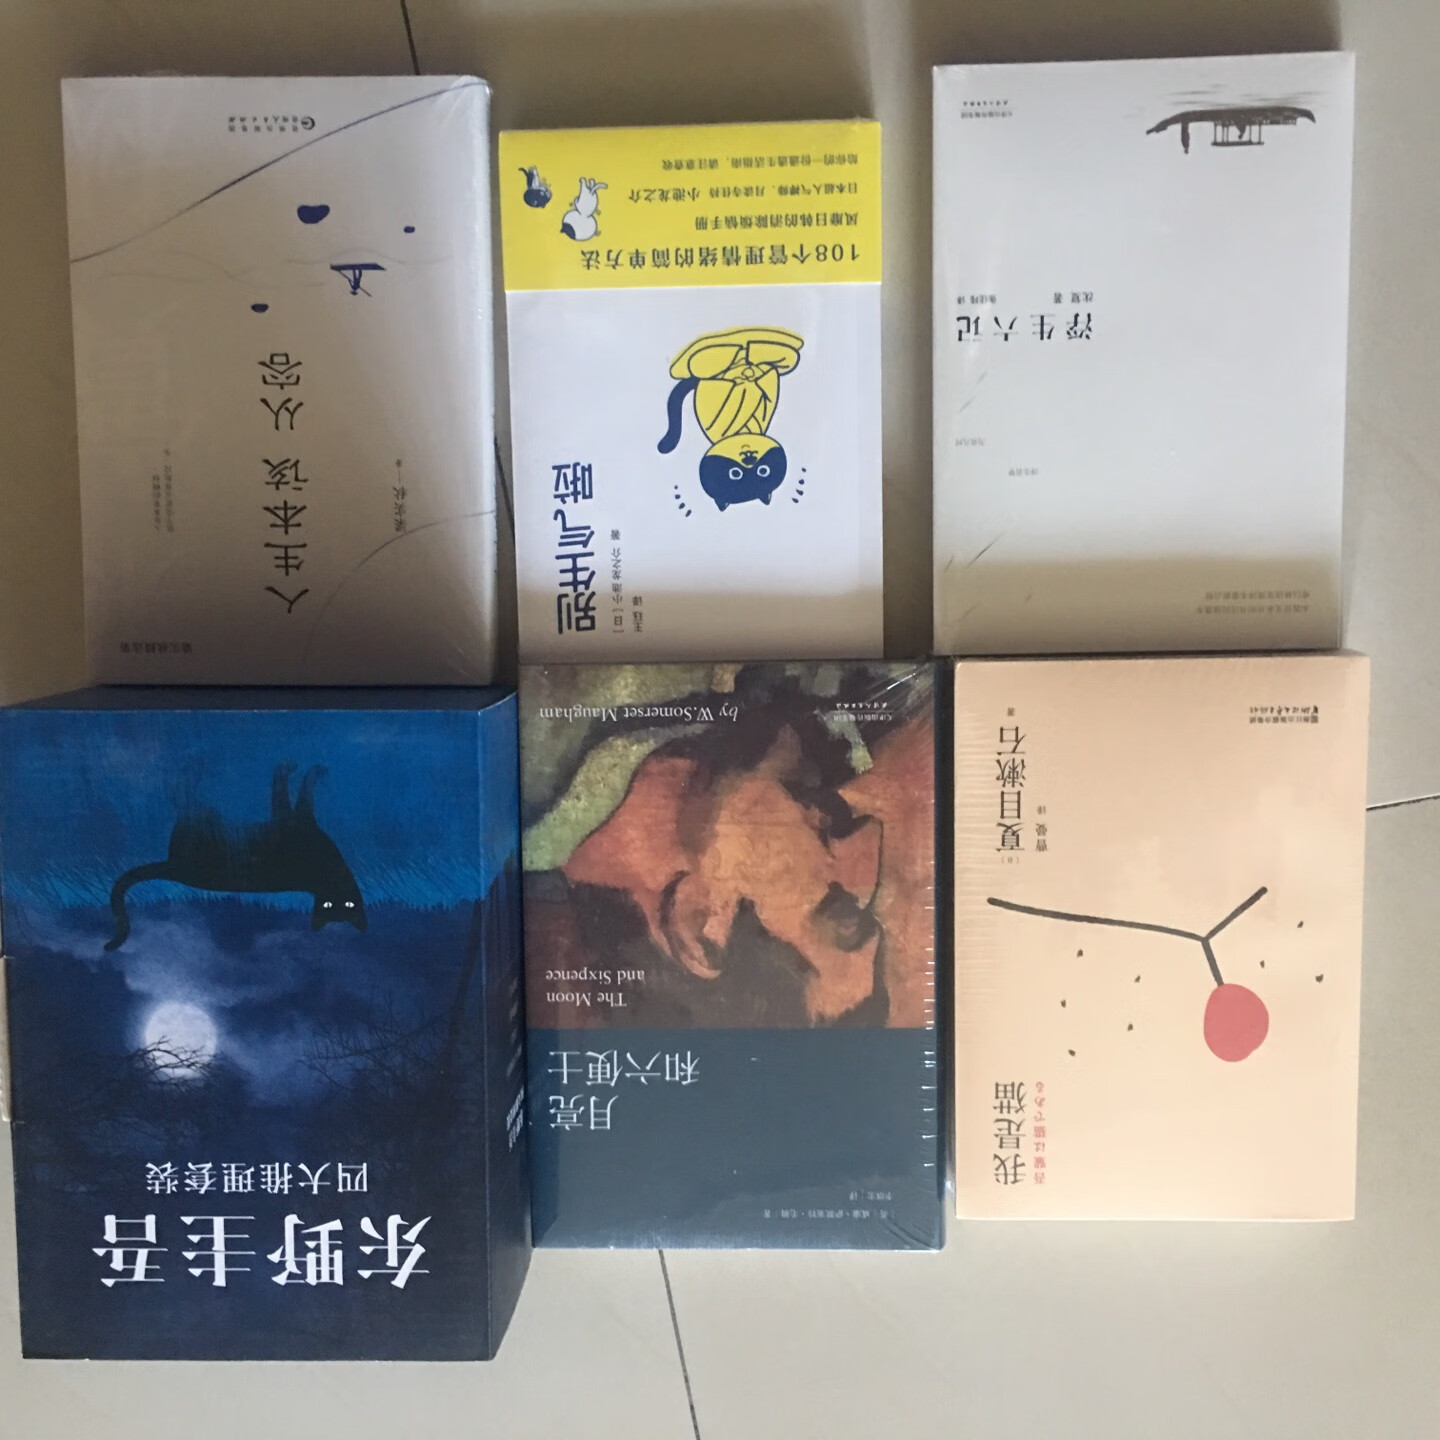 很喜欢东野圭*的推理小说，书的包装不错质量很好